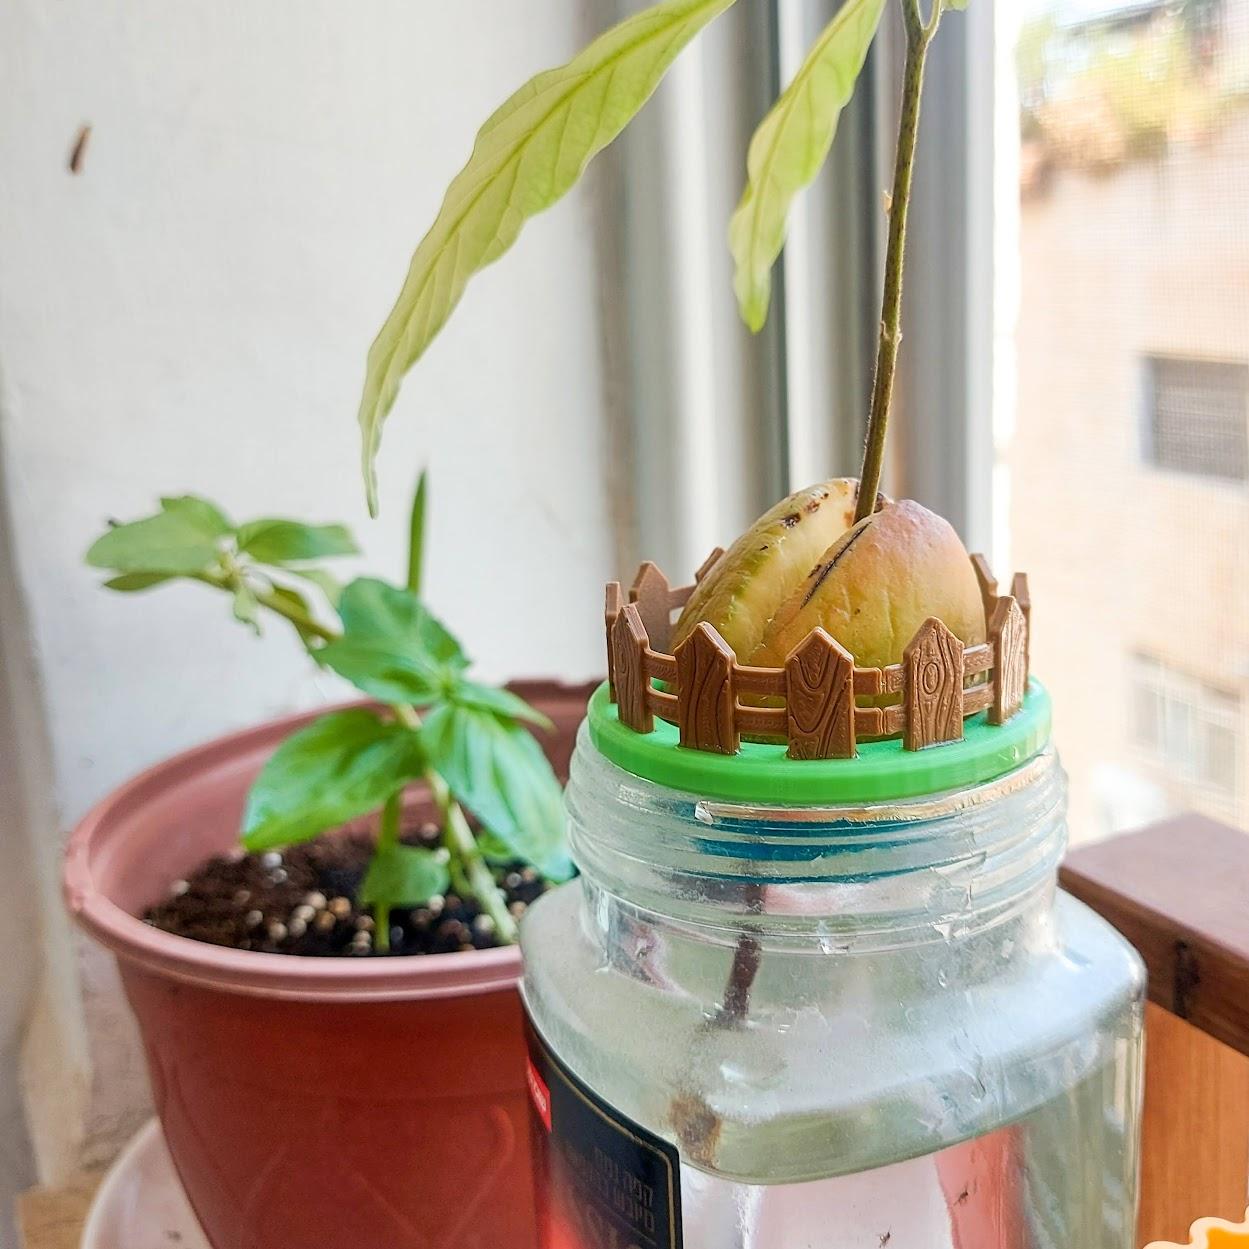 Mini Avocado Garden 3d model